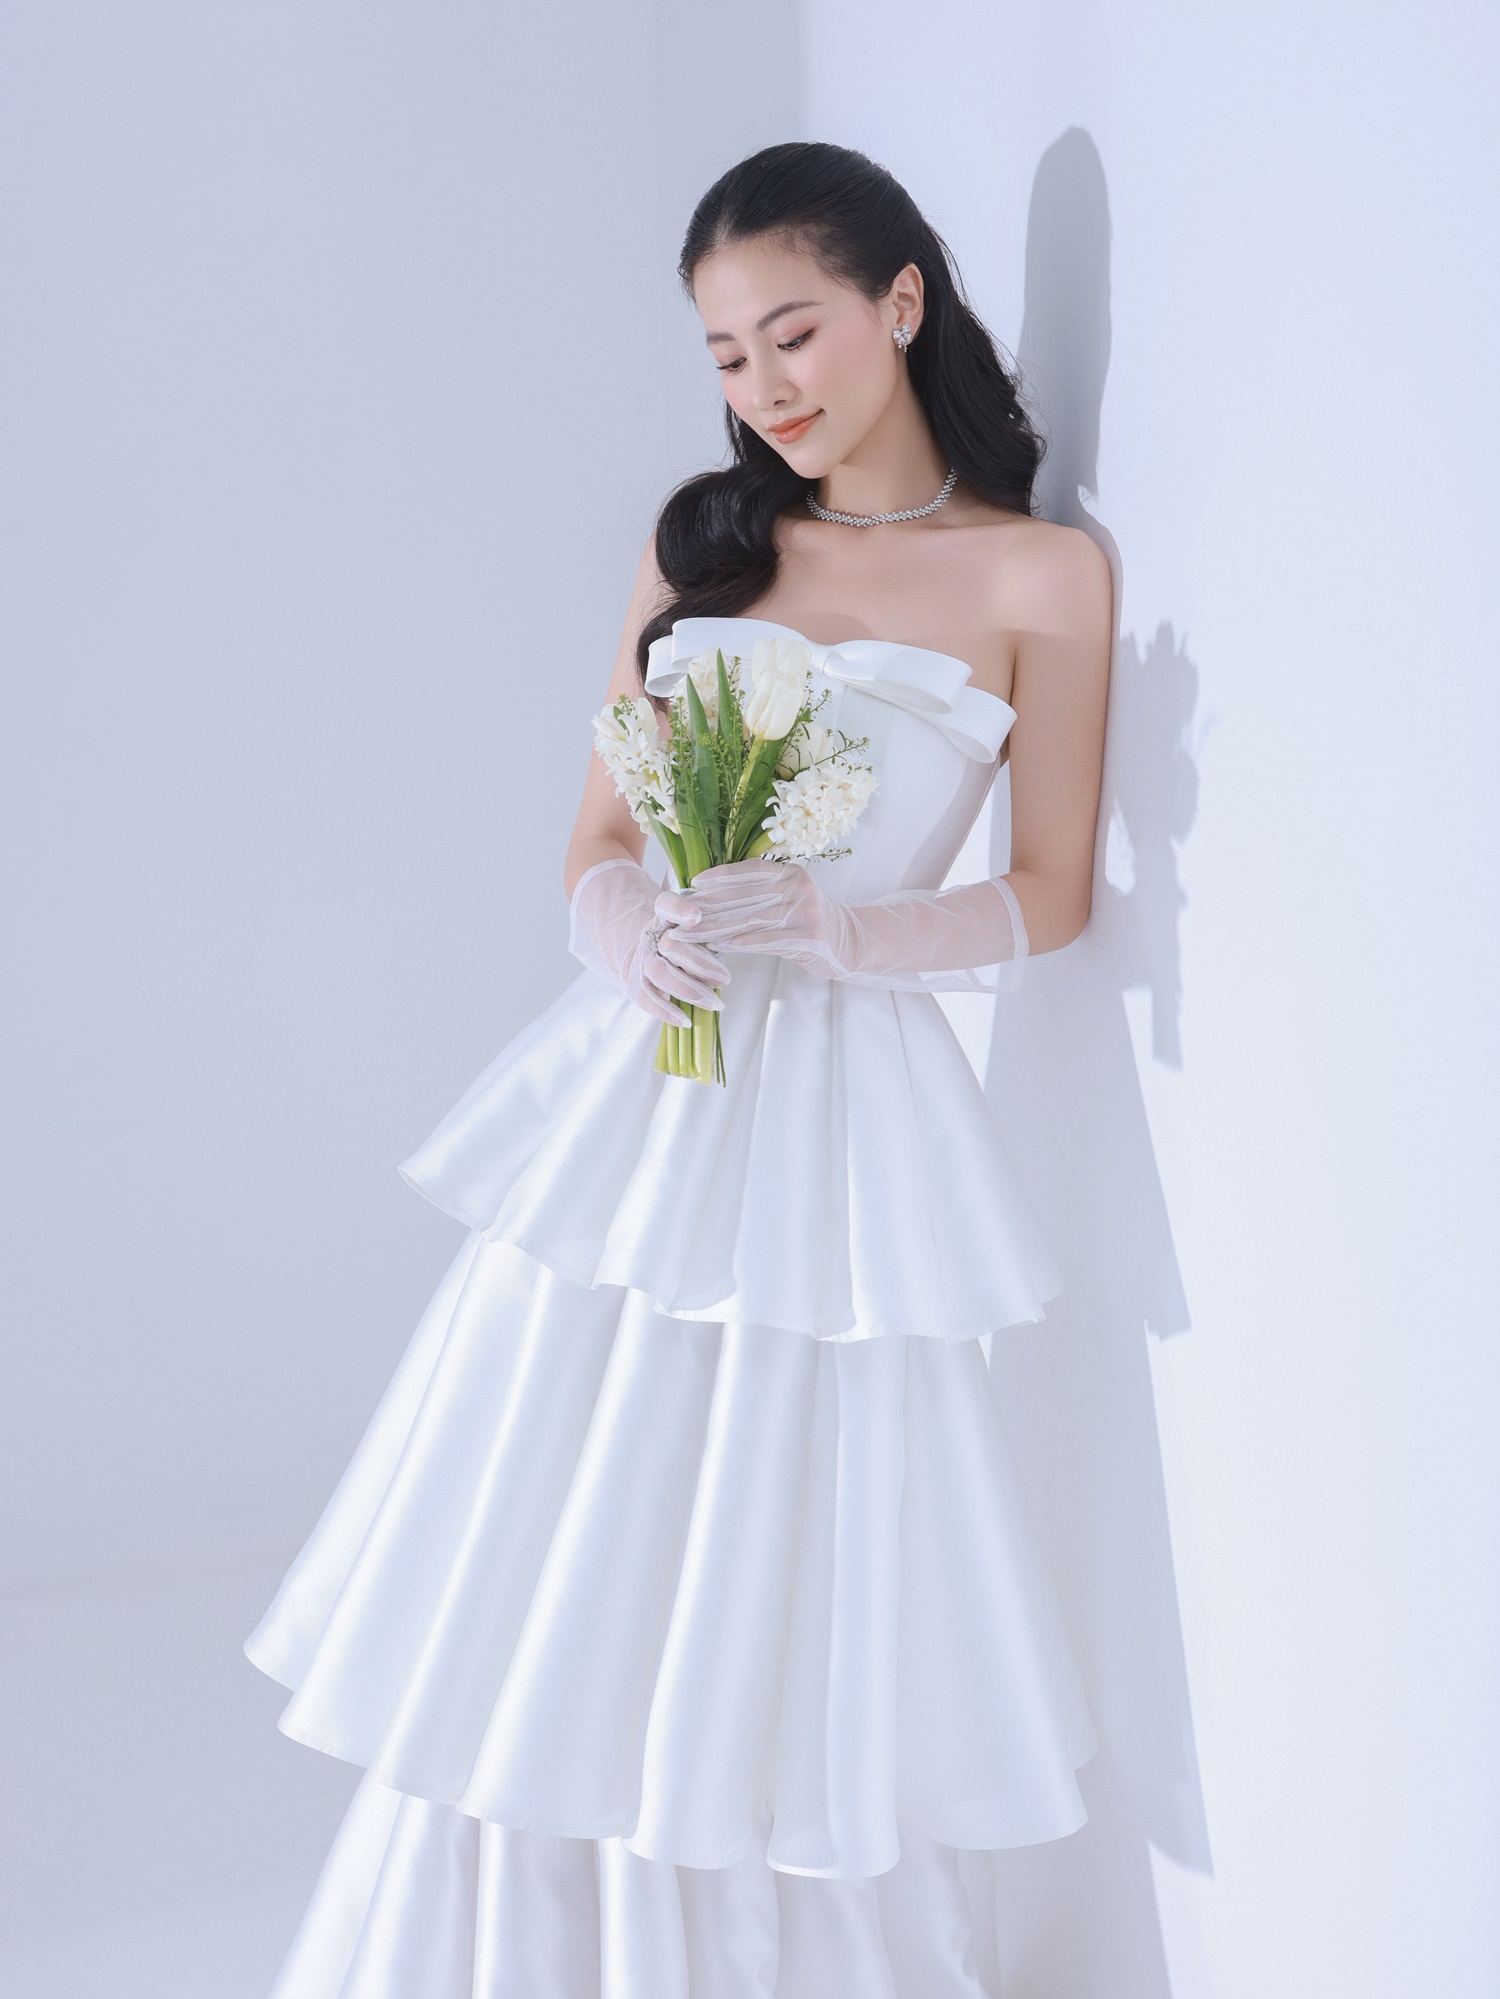 Với màu sắc chủ đạo là sắc trắng tinh khôi, thuần khiết, những chiếc đầm cưới của Nguyễn Minh Công mang đến nét đẹp thanh lịch, sang trọng nhưng không quên tôn lên sự thanh thoát, trong trẻo cho cô dâu. 